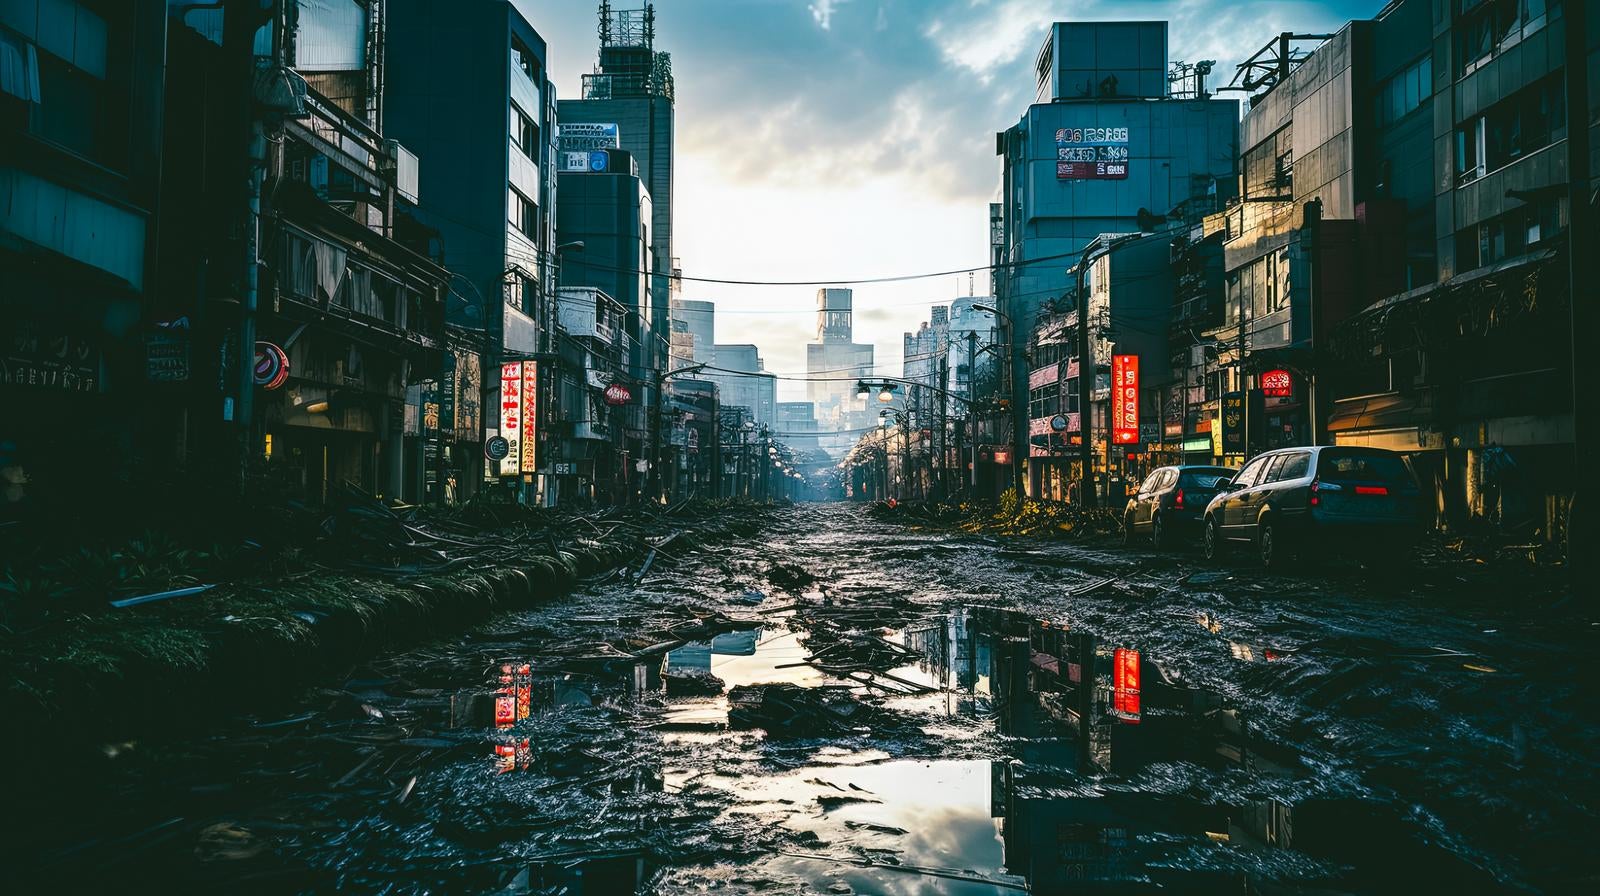 「崩壊した都市、誰もいない世界線」の写真